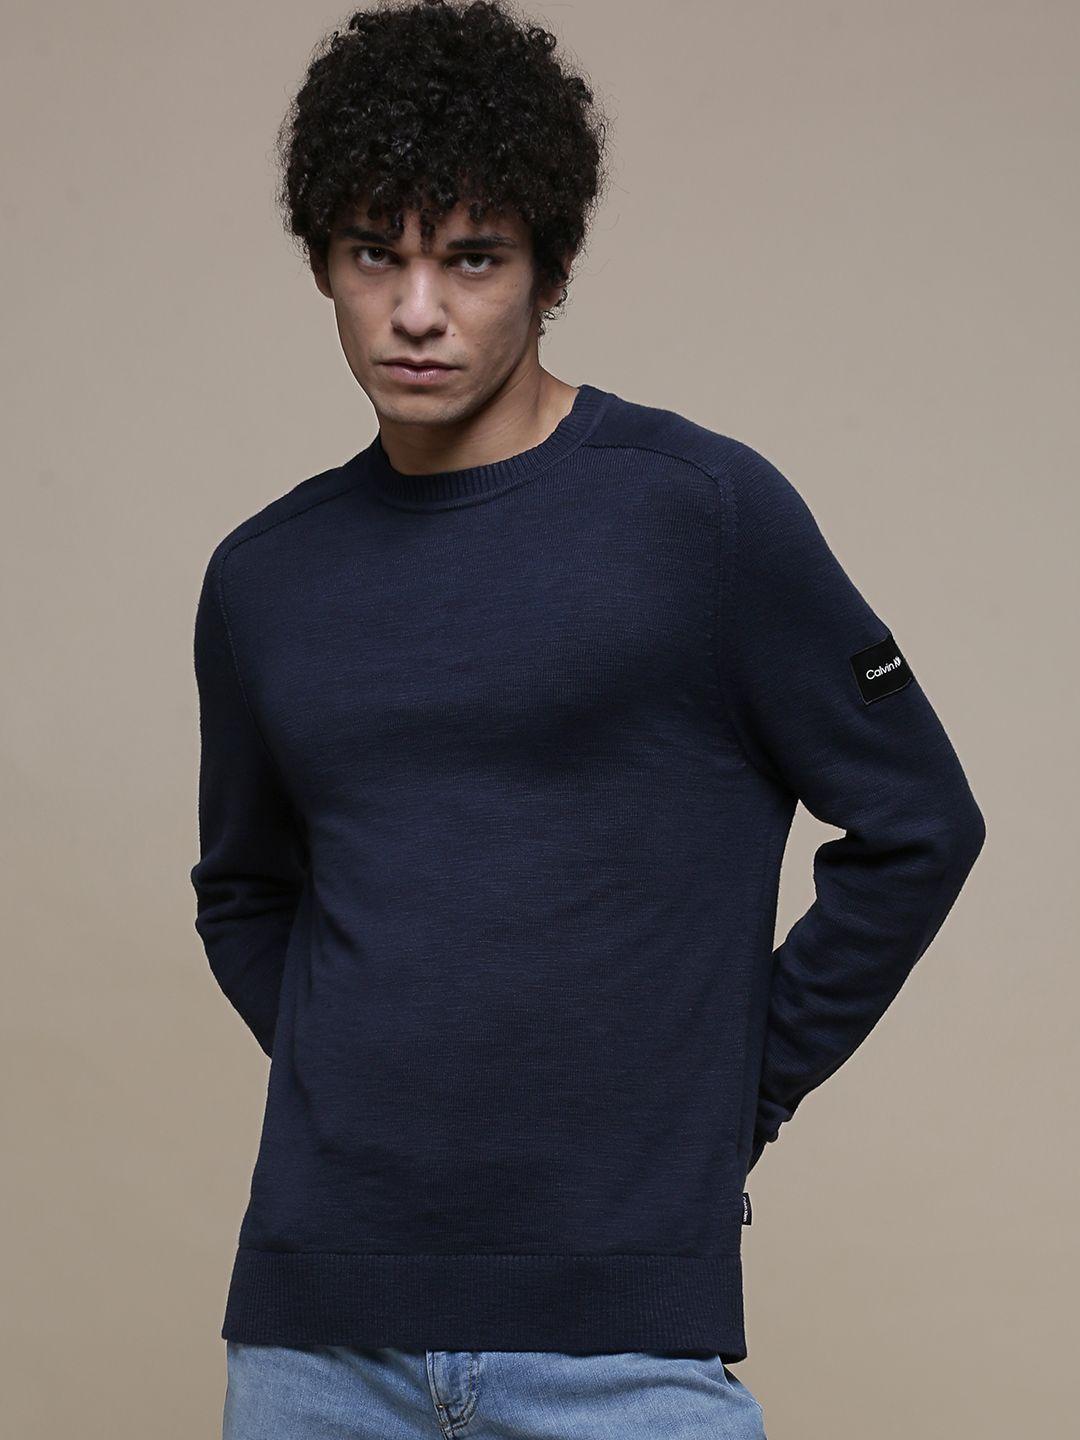 calvin-klein-jeans-men-navy-blue-slub-textured-pullover-sweater